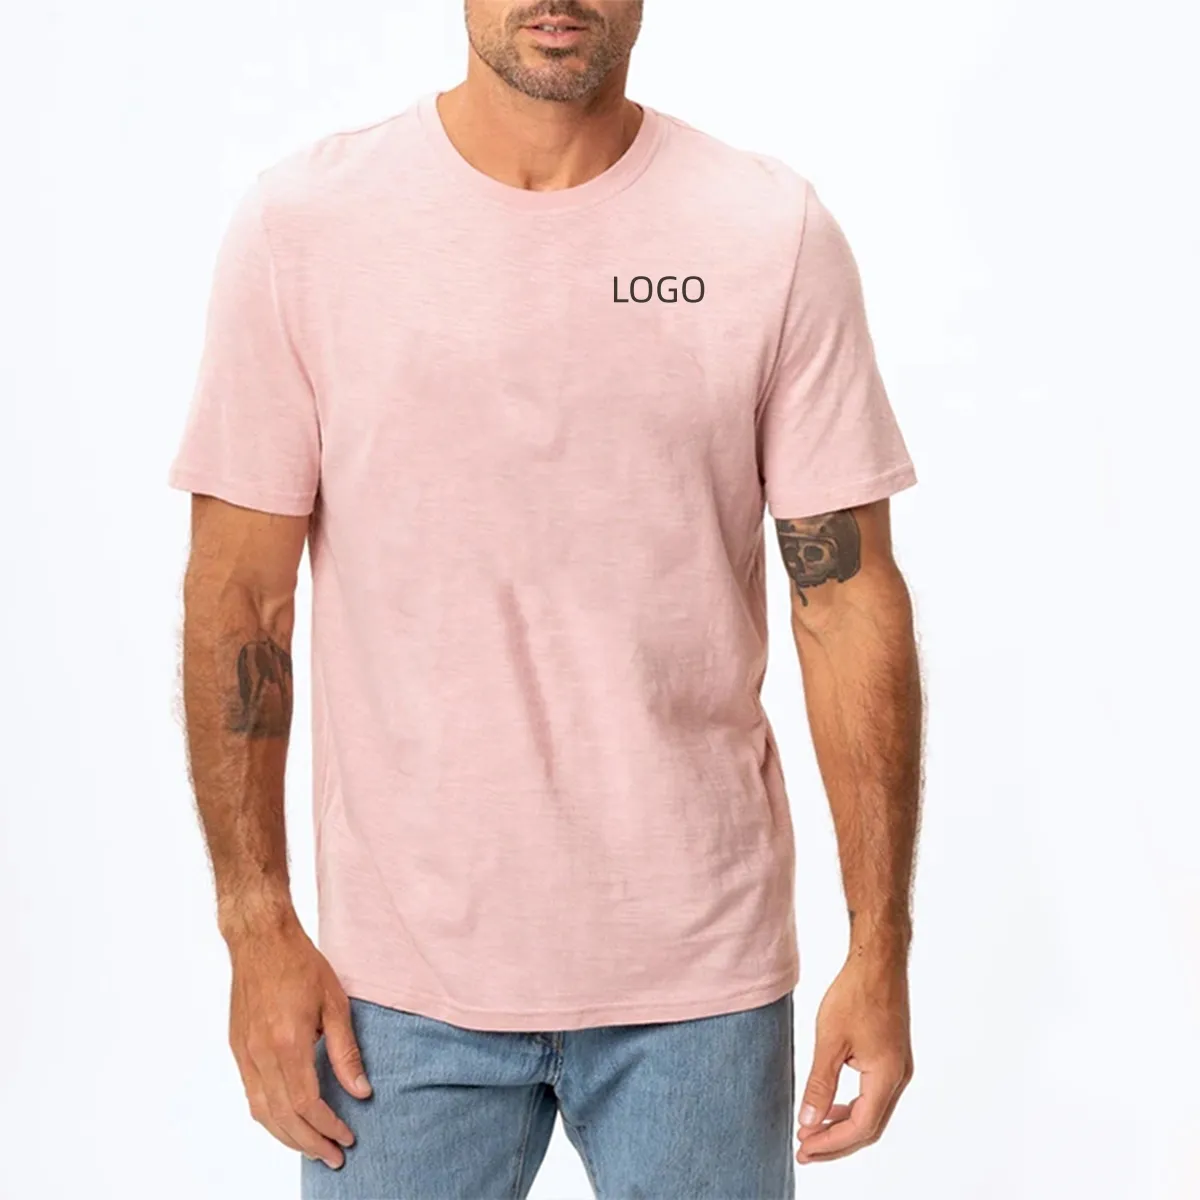 ホット販売製造プリントカスタムブランクレディースピンクTシャツラベル綿100% プラスサイズTシャツ男性用グラフィックTシャツ